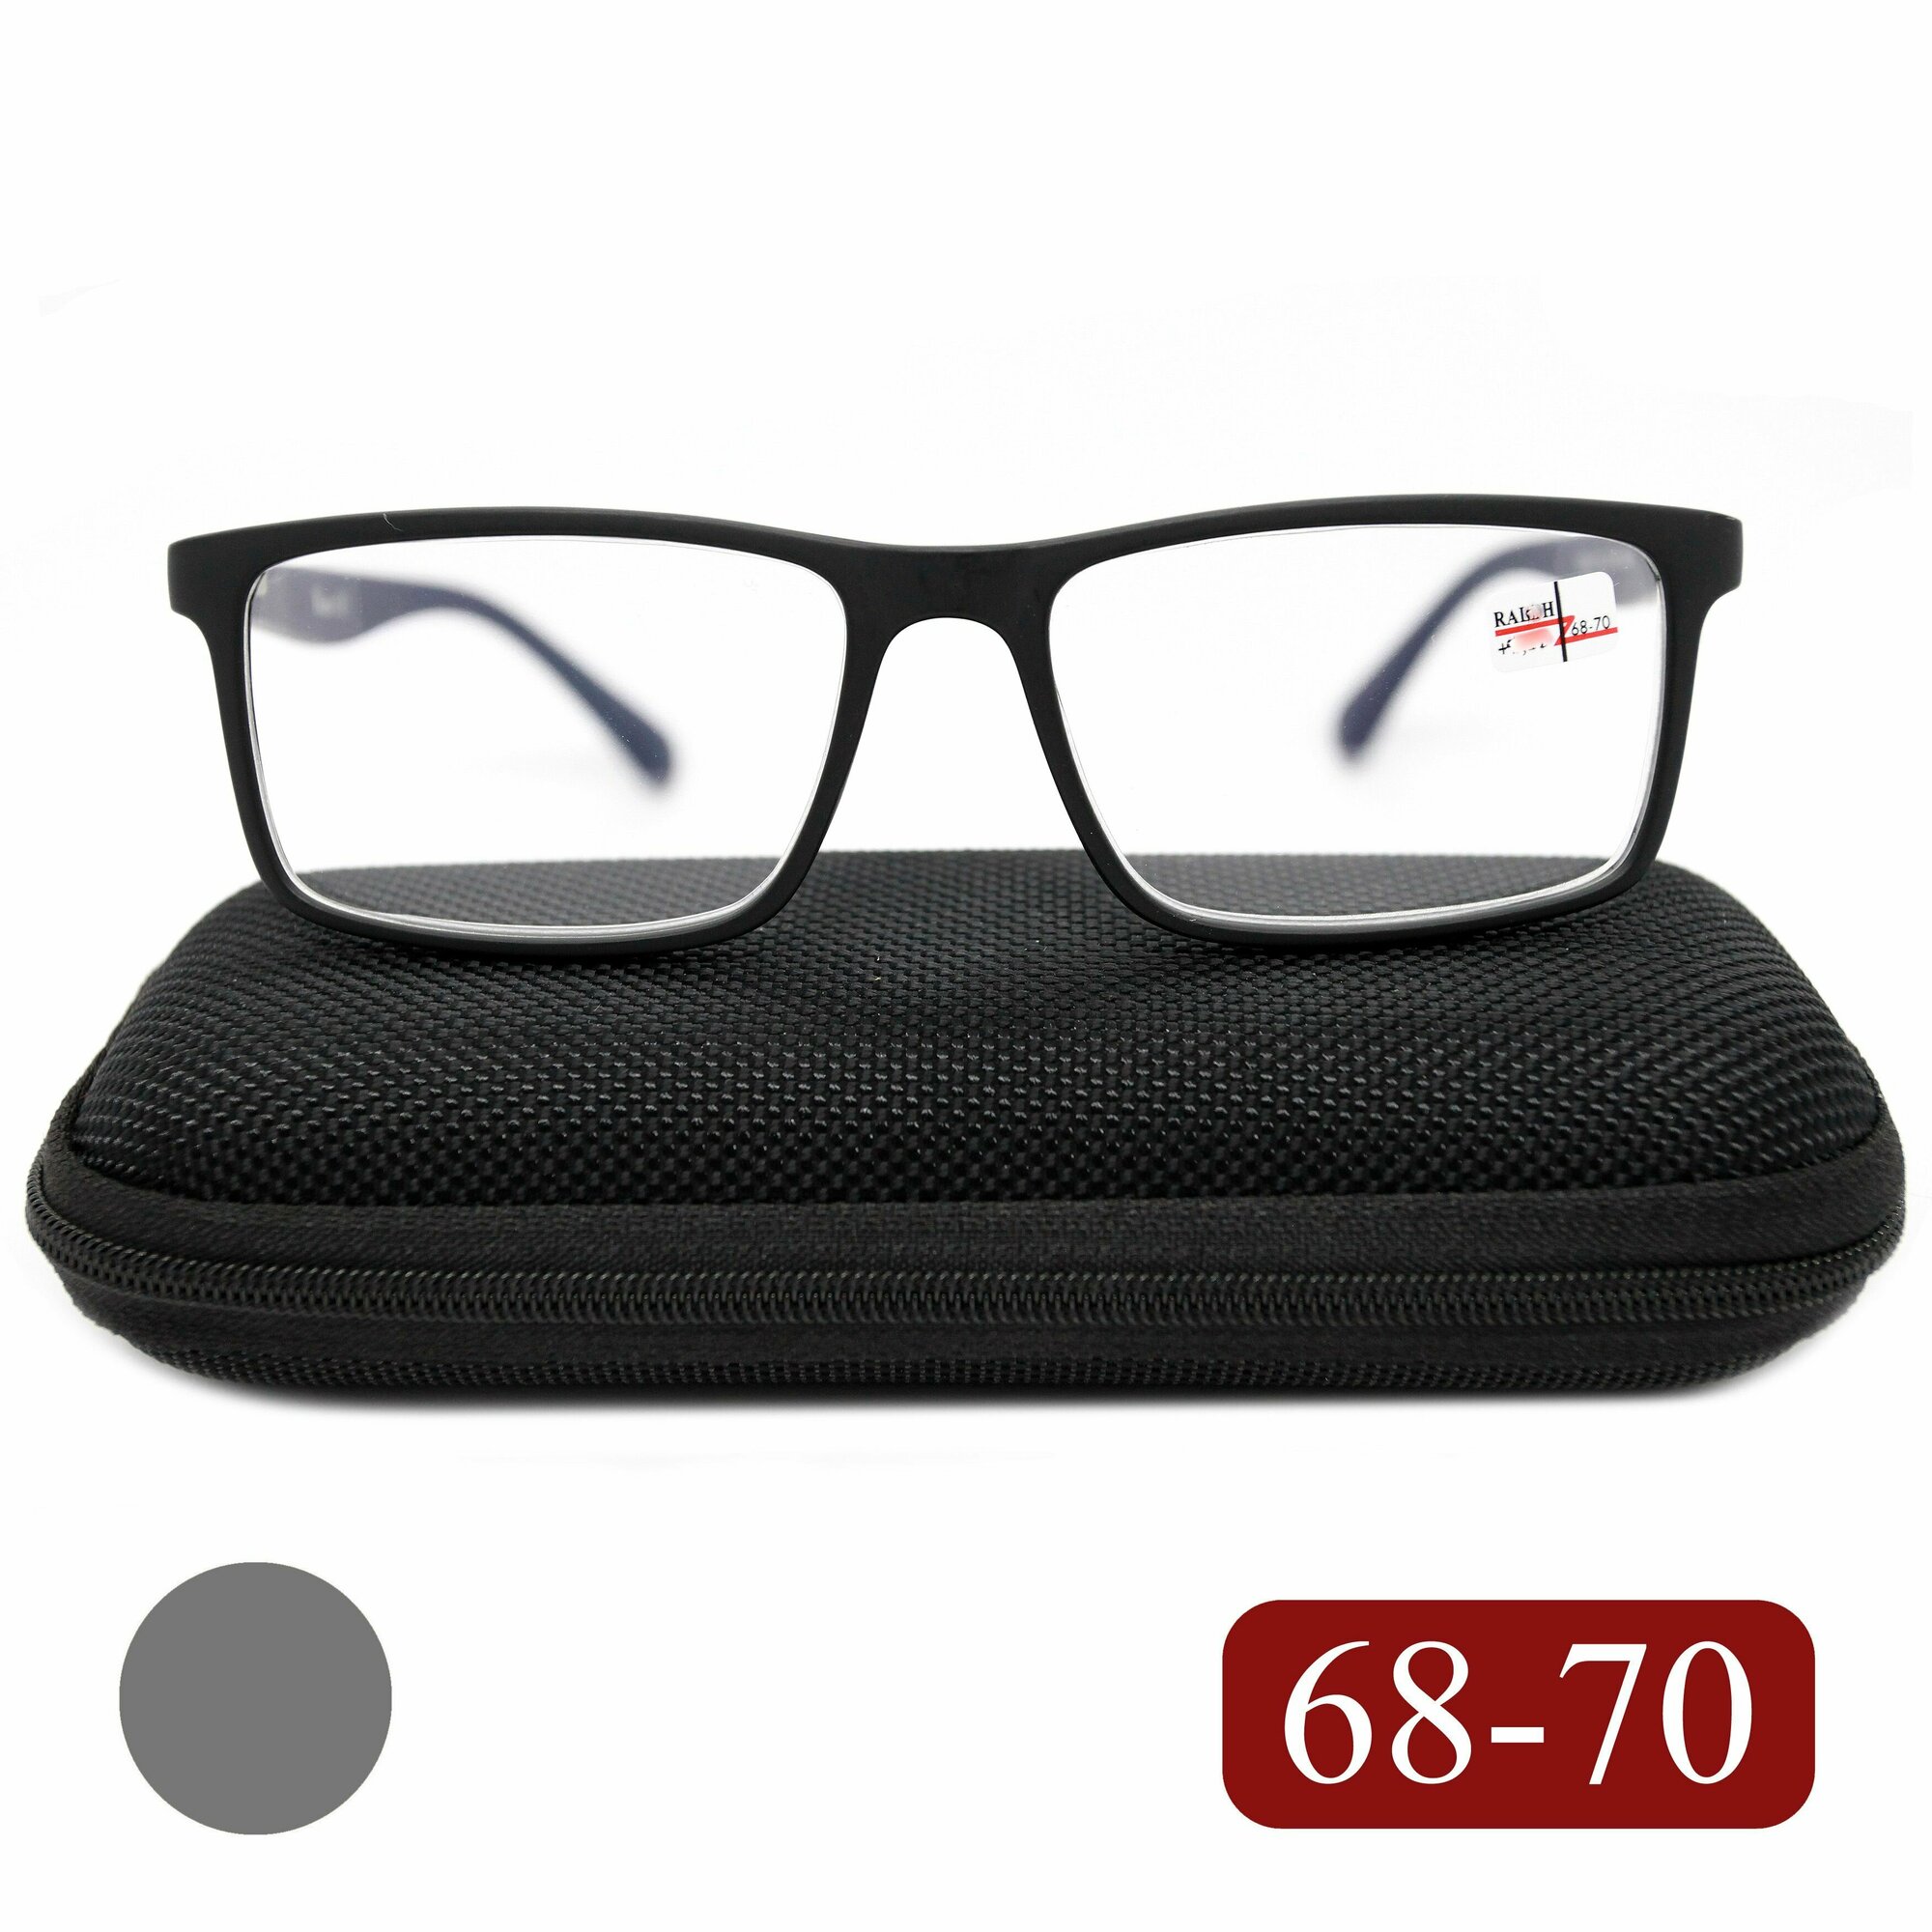 Очки с диоптриями мужские 68-70 (+4.50) RALPH 0682 C1, с футляром, цвет черный-матовый, заушник серый, линзы пластик, РЦ 68-70